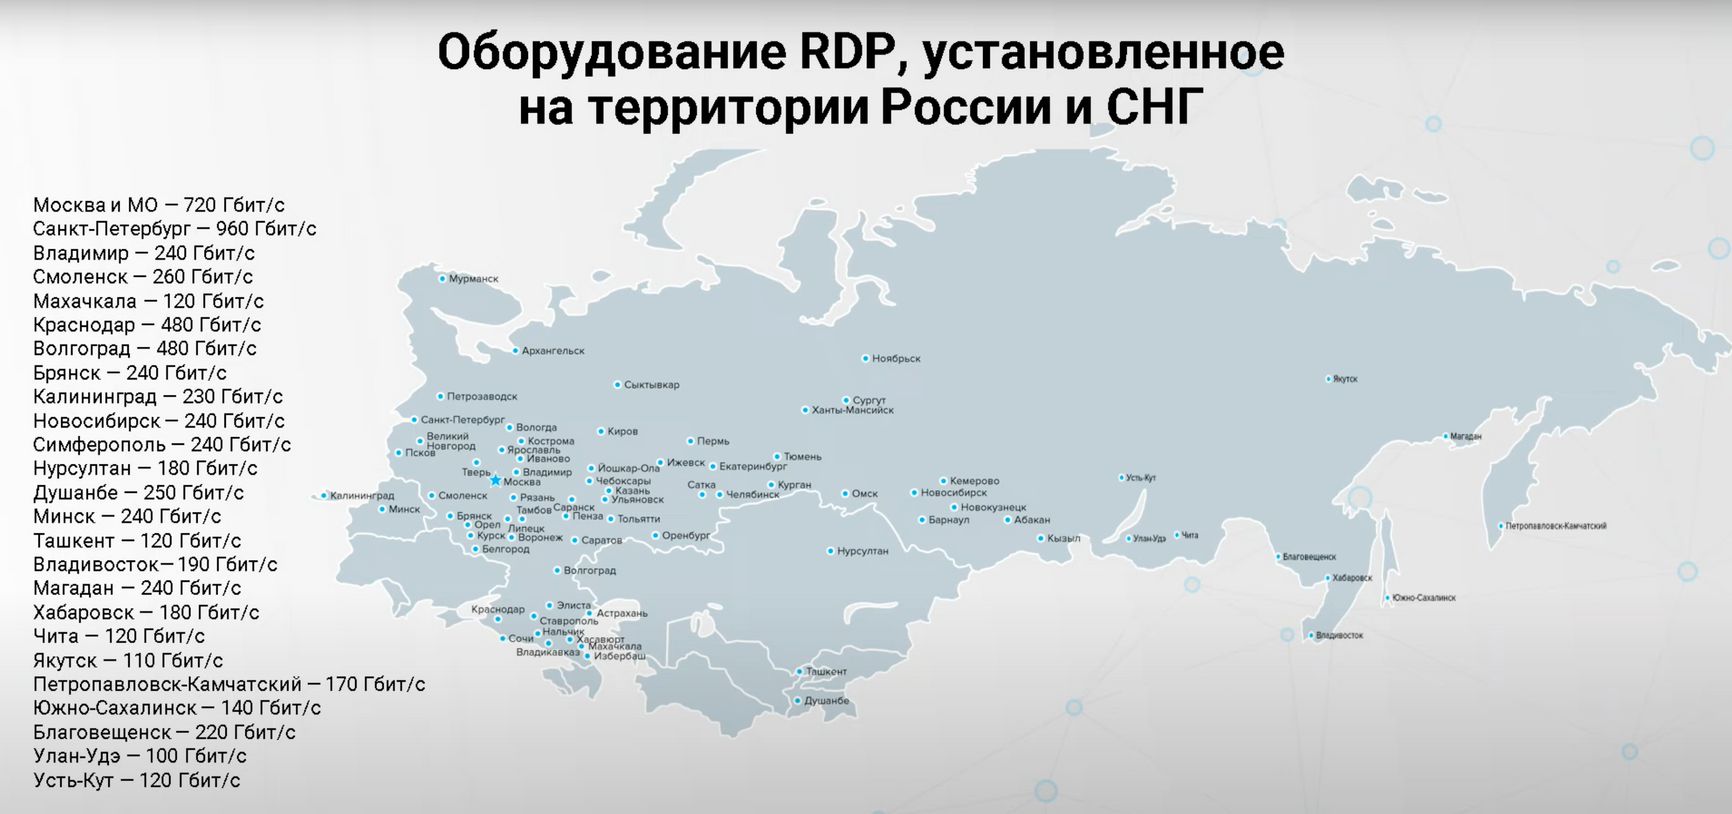 Территория, охваченная оборудованием RDP.Ru на начало 2022 года (слайд из рекламной презентации)